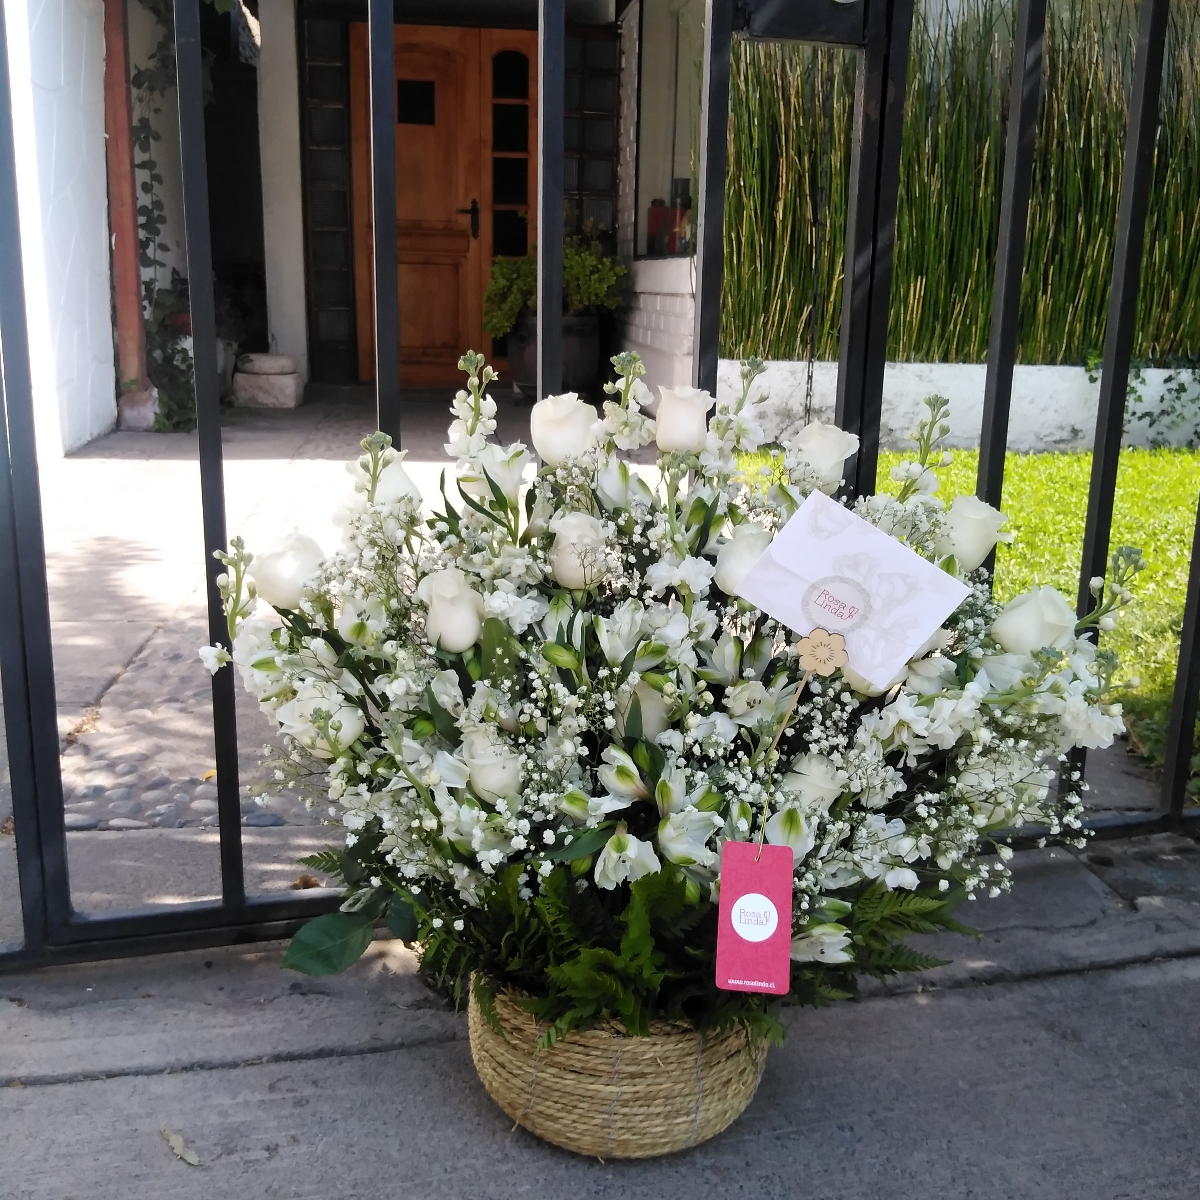 Pésame - Arreglo floral de condolencias con rosas y mix de flores blancas de temporaada - Pedido 248317